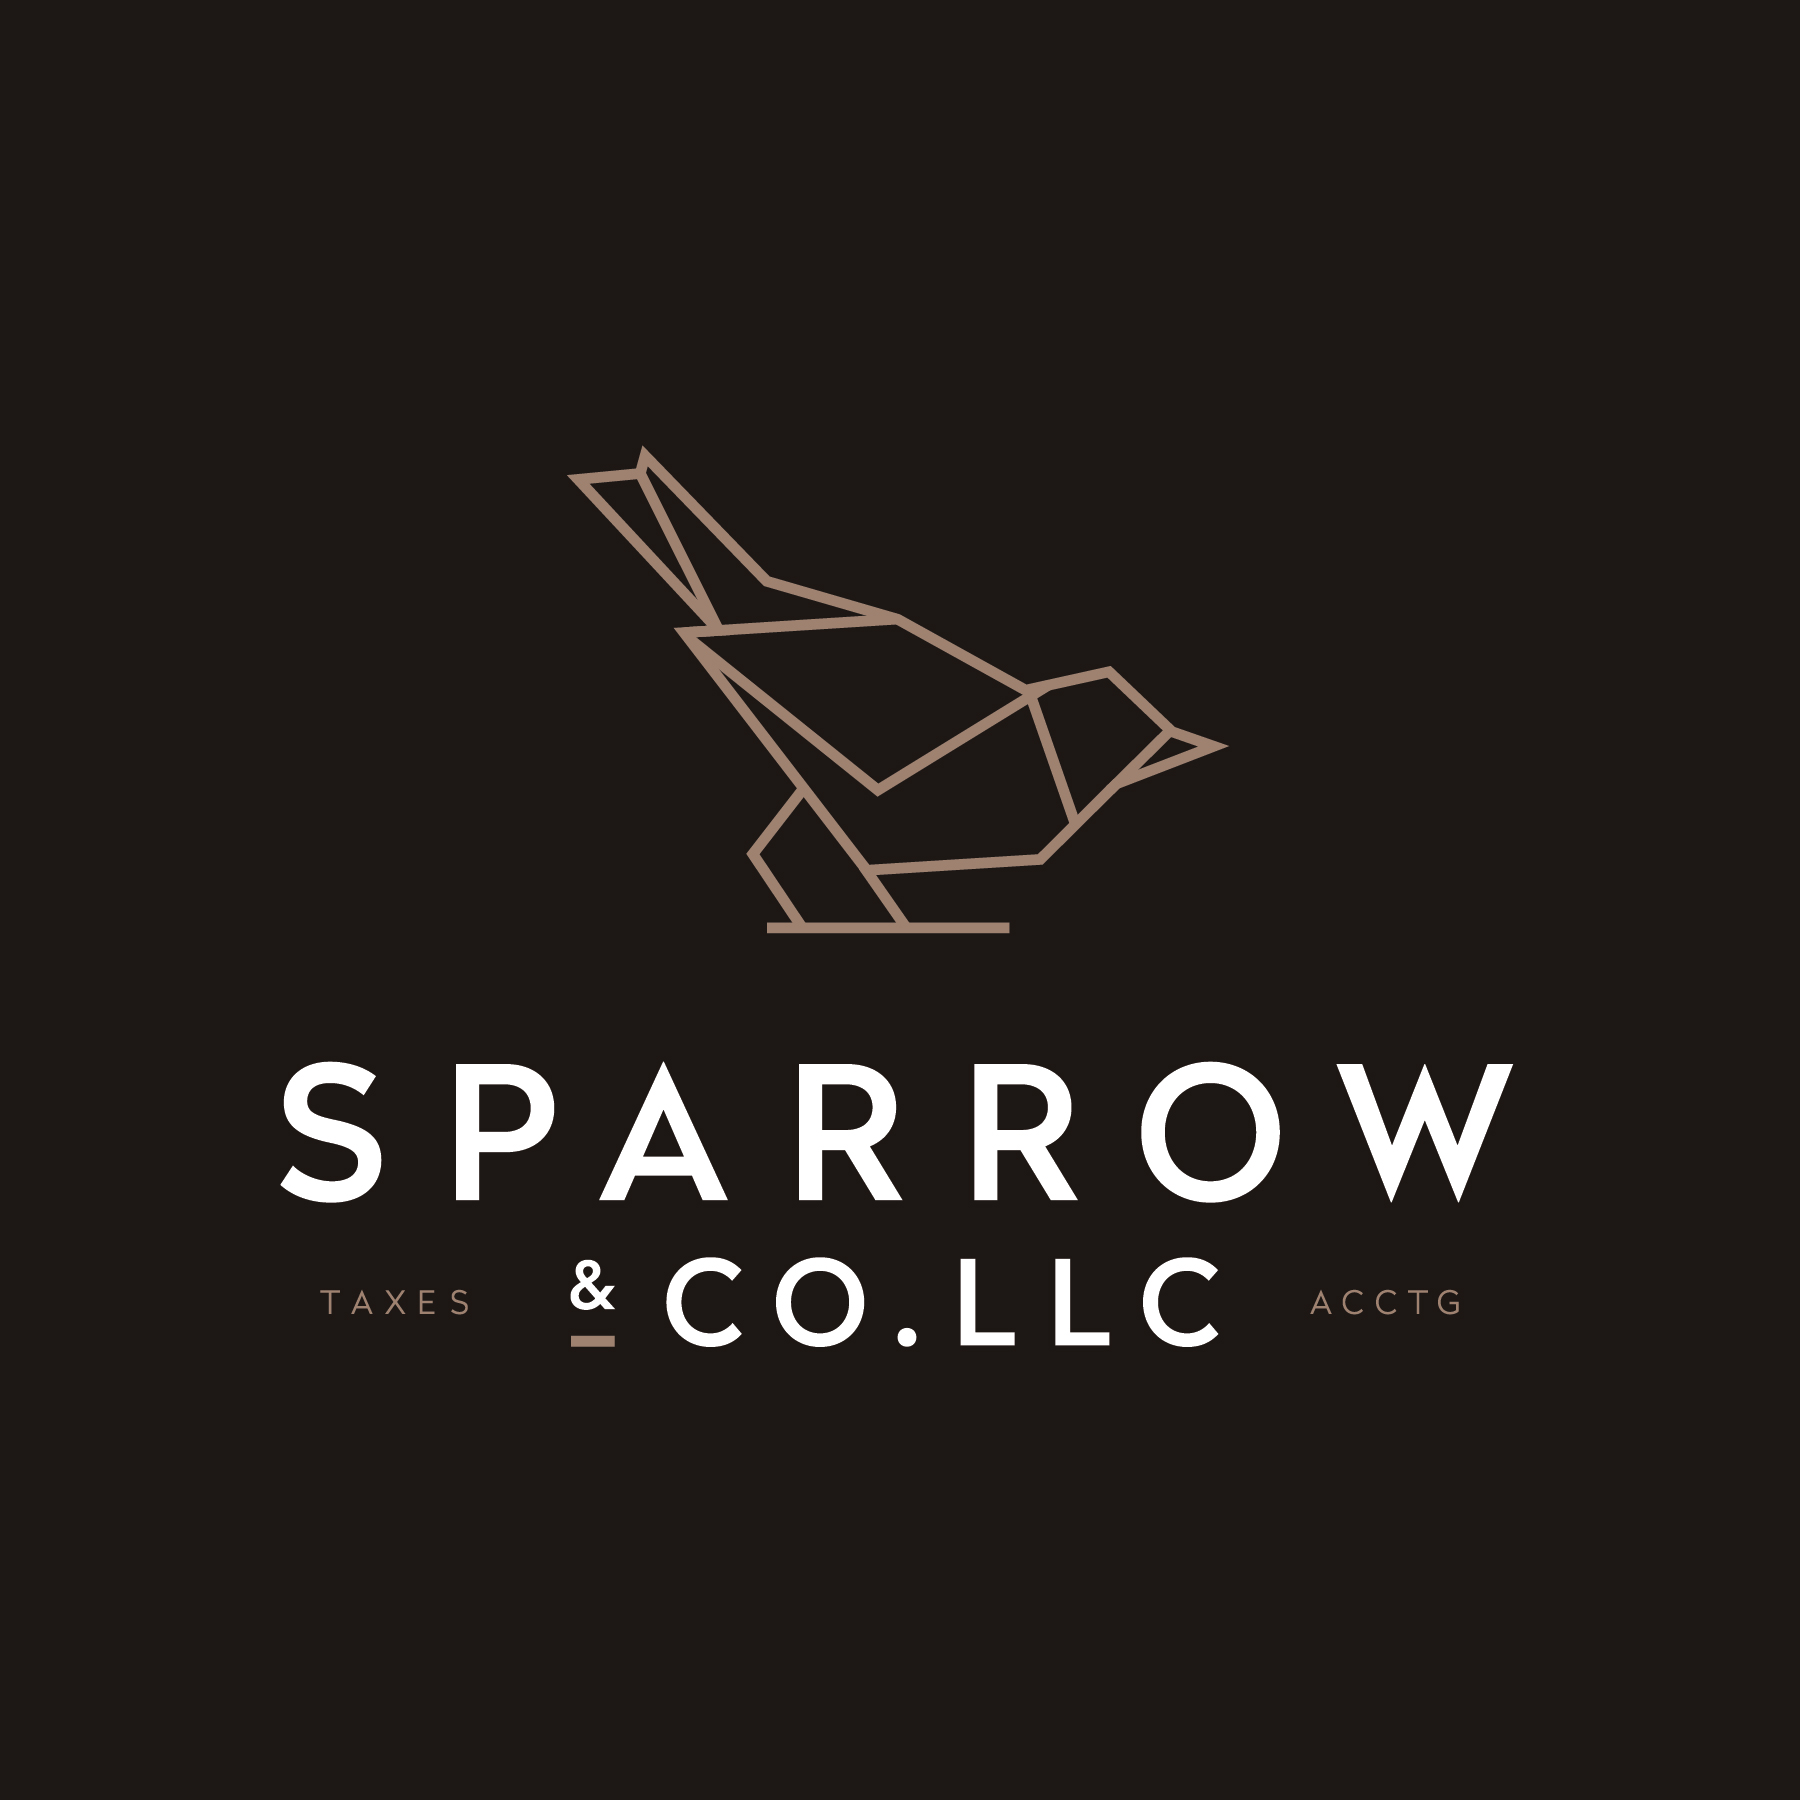 Sparrow & Co